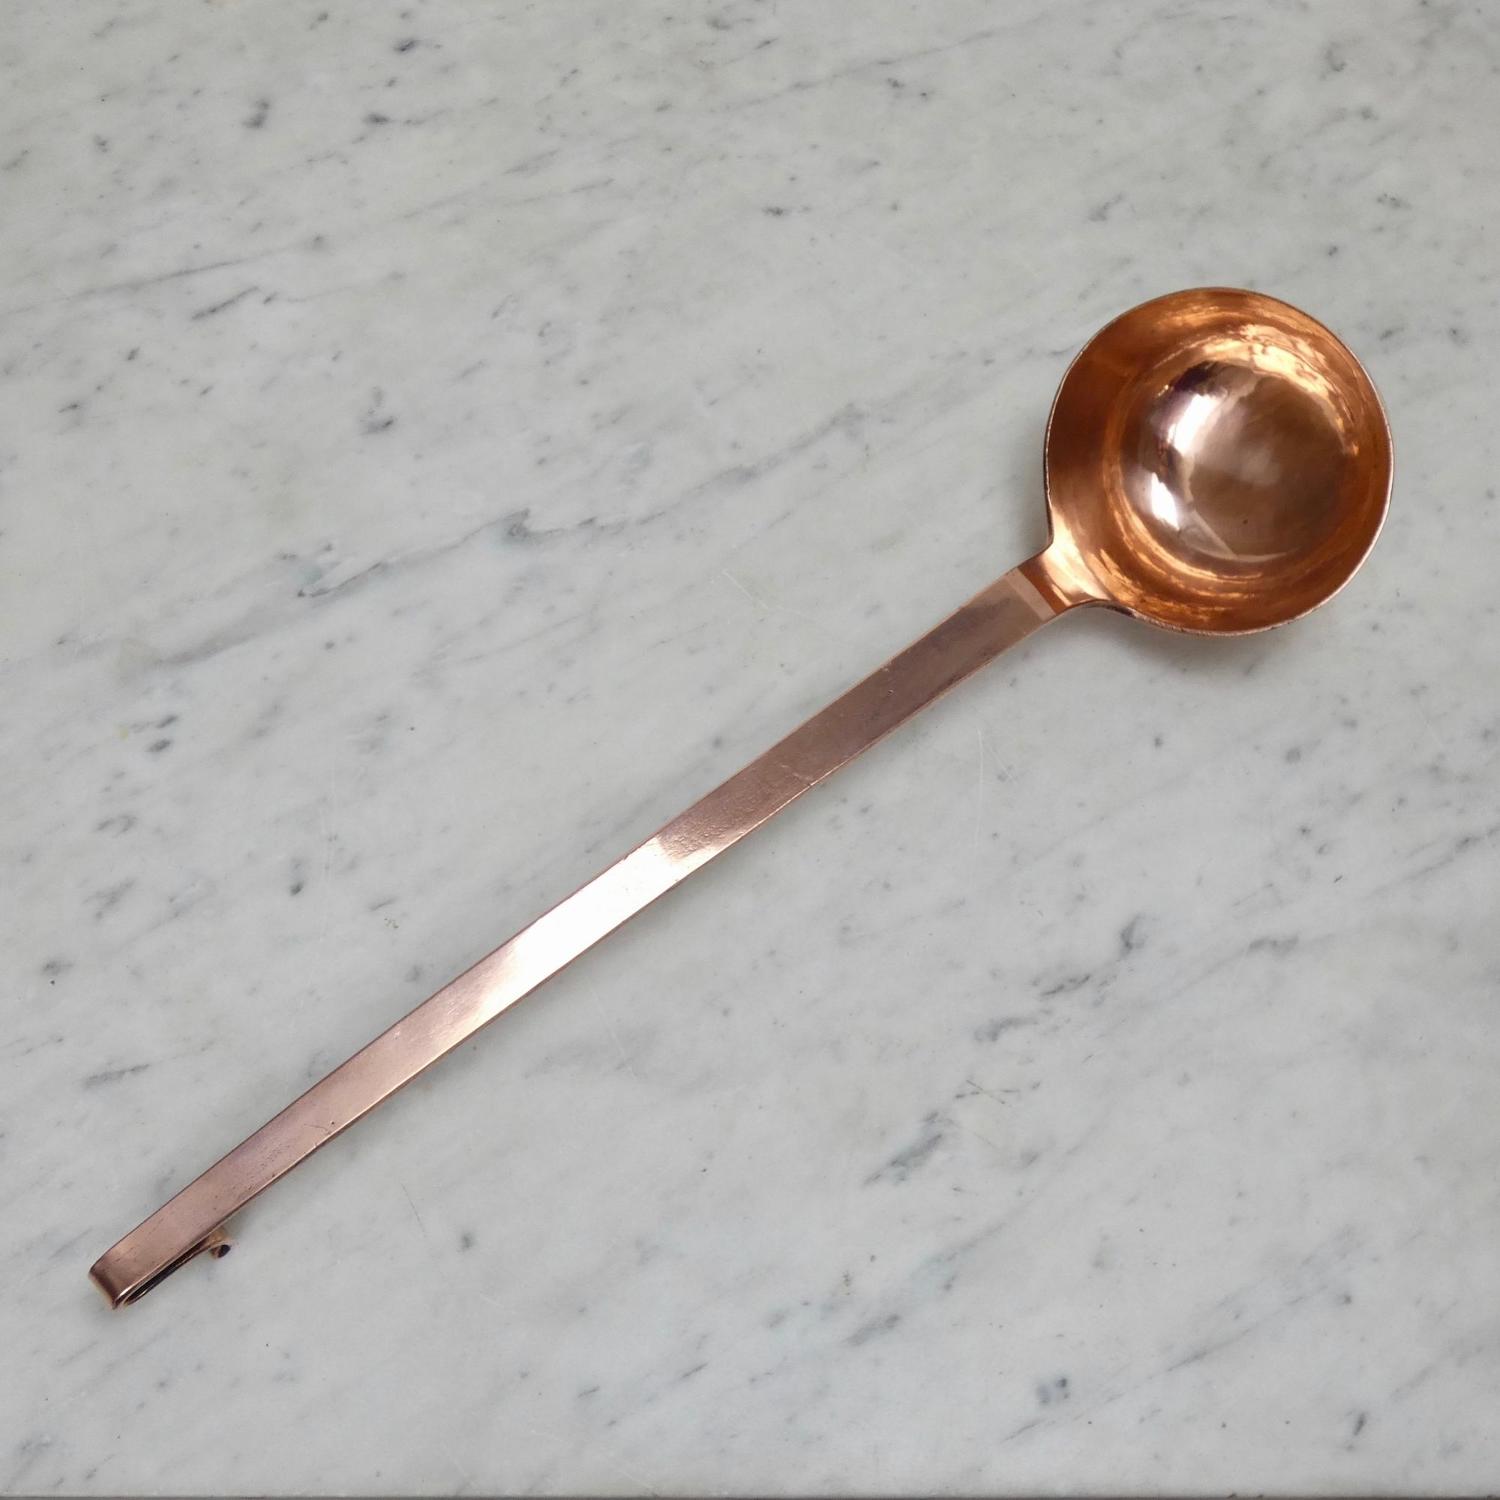 Large, antique, copper ladle